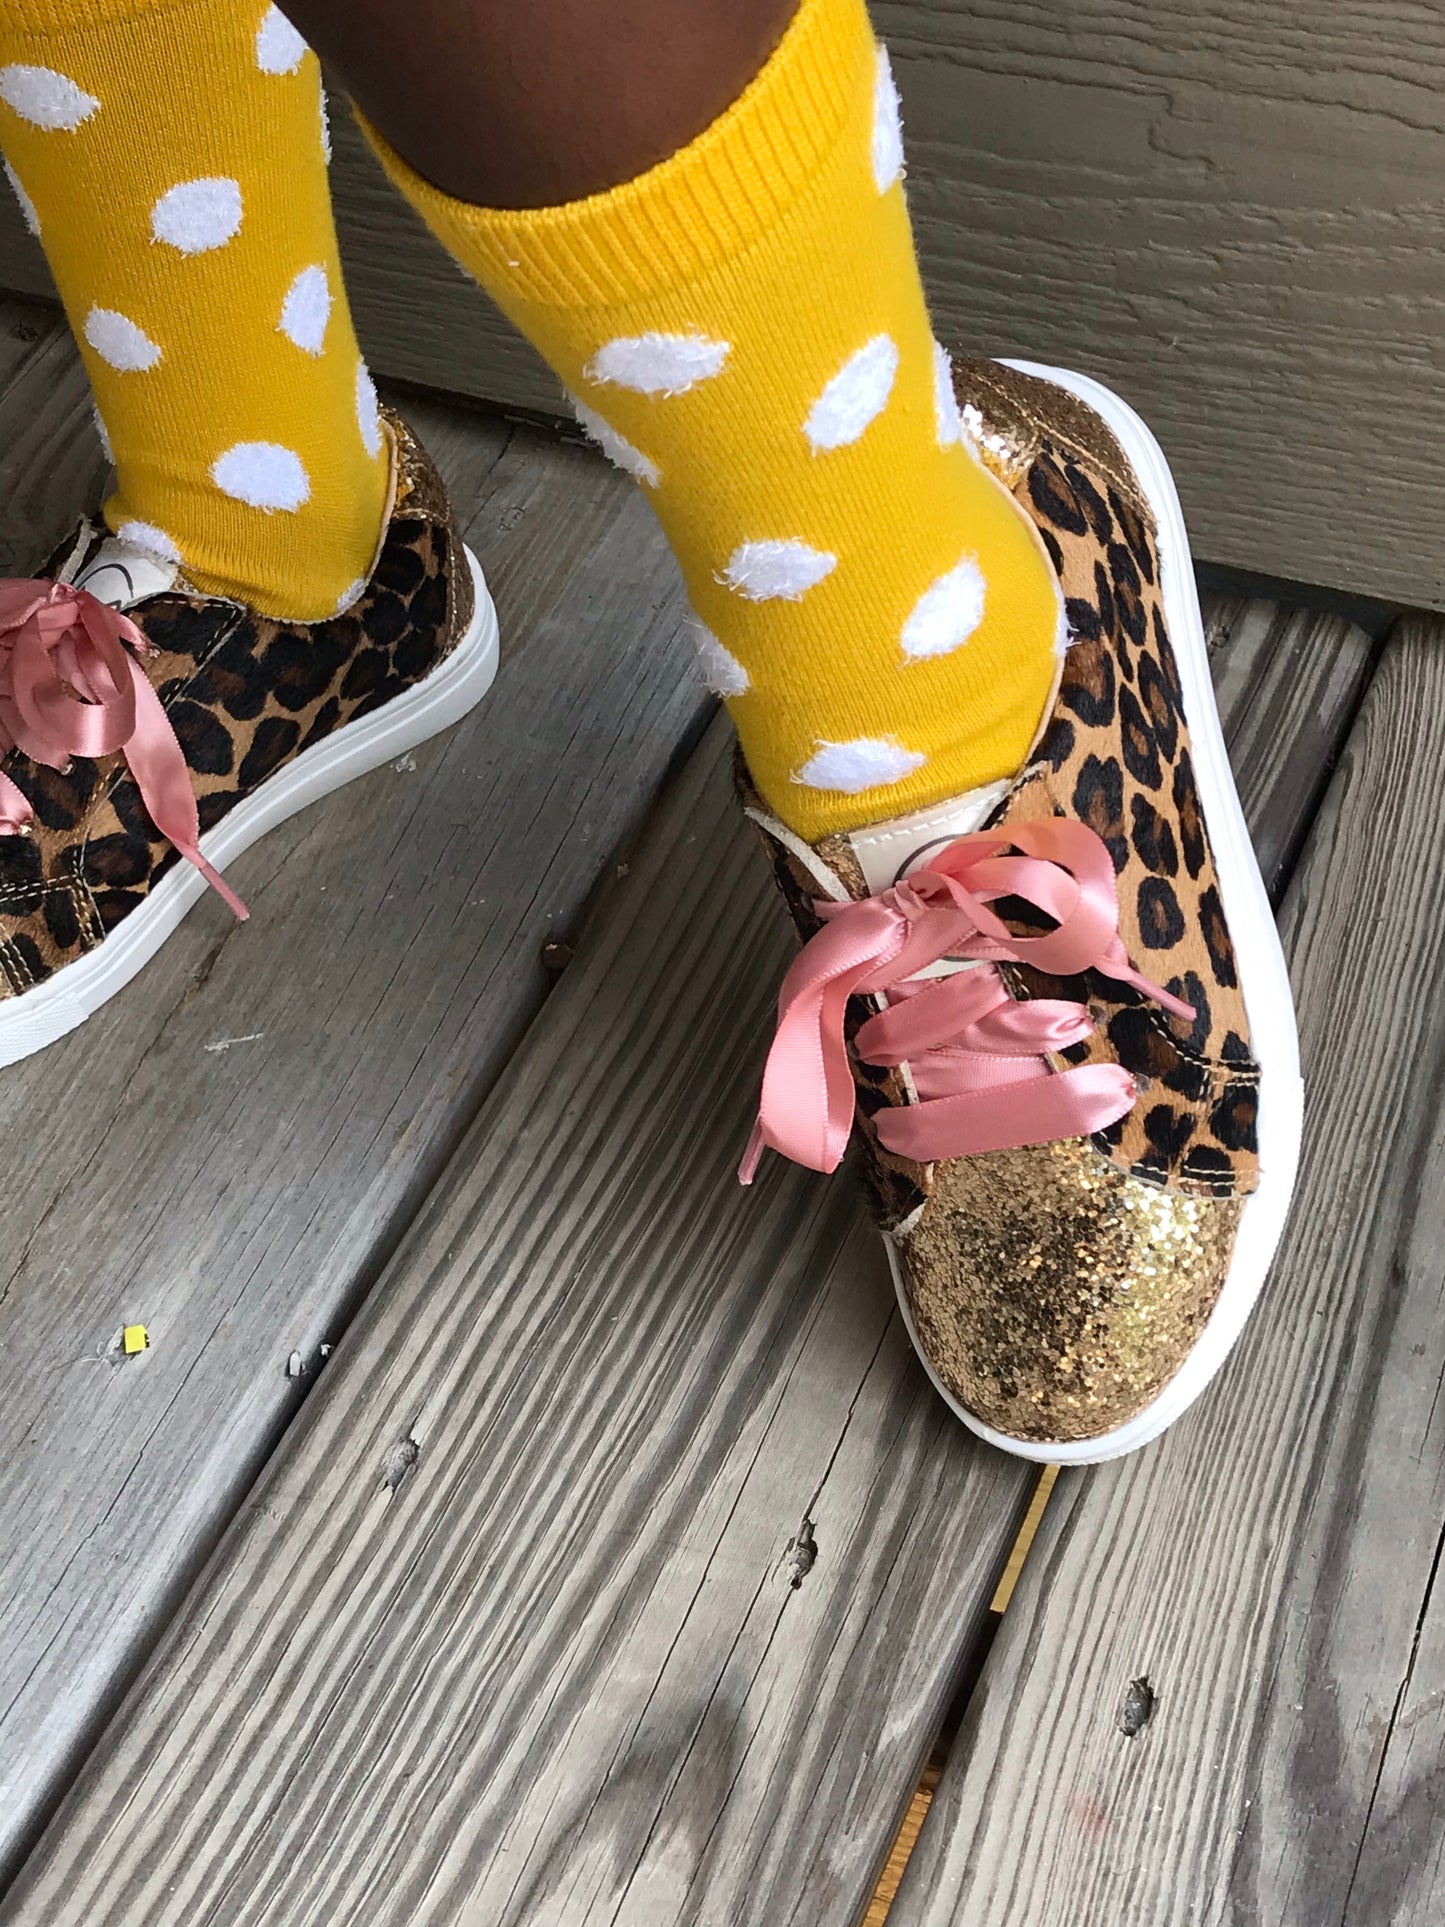 Isabella Sneaker | Leopard